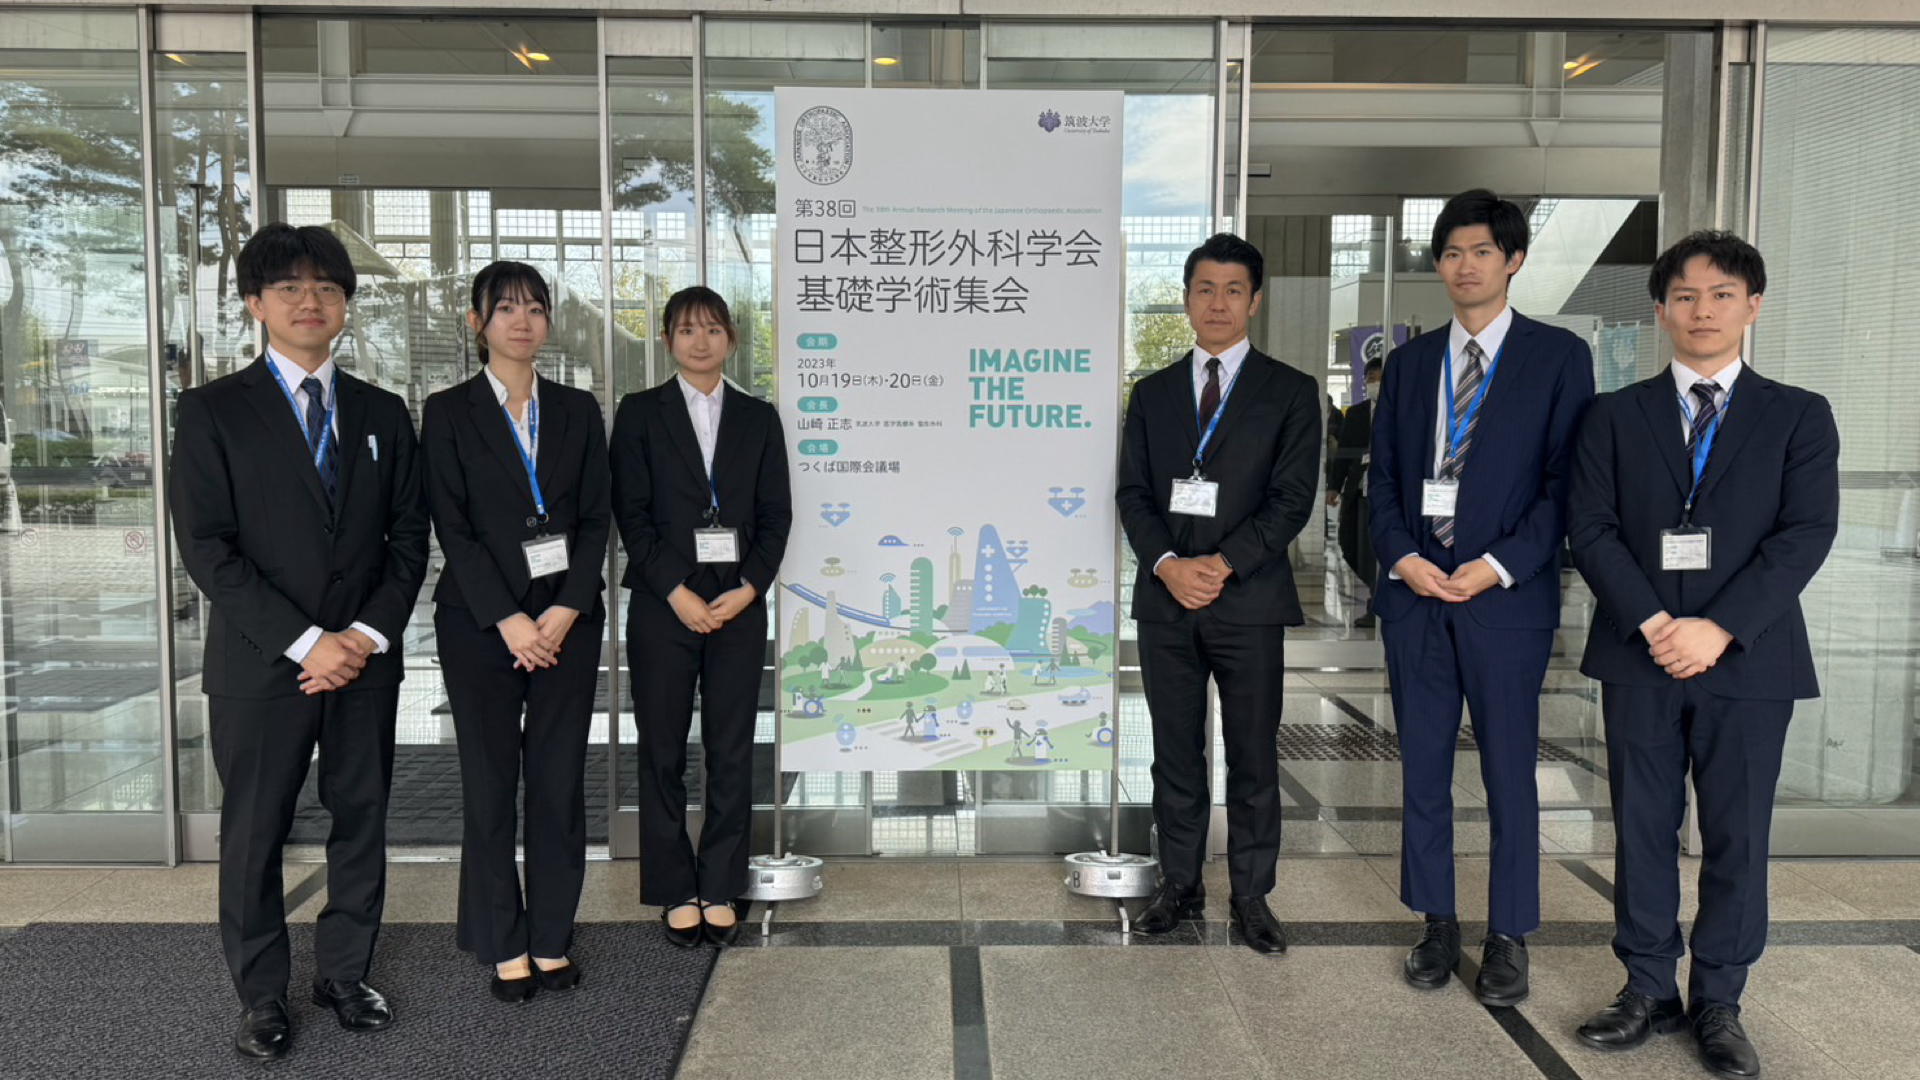 M2野澤，笠井，B4枡本，山本，卒業生竹内が第38回日本整形外科基礎学術集会にて発表を行いました．